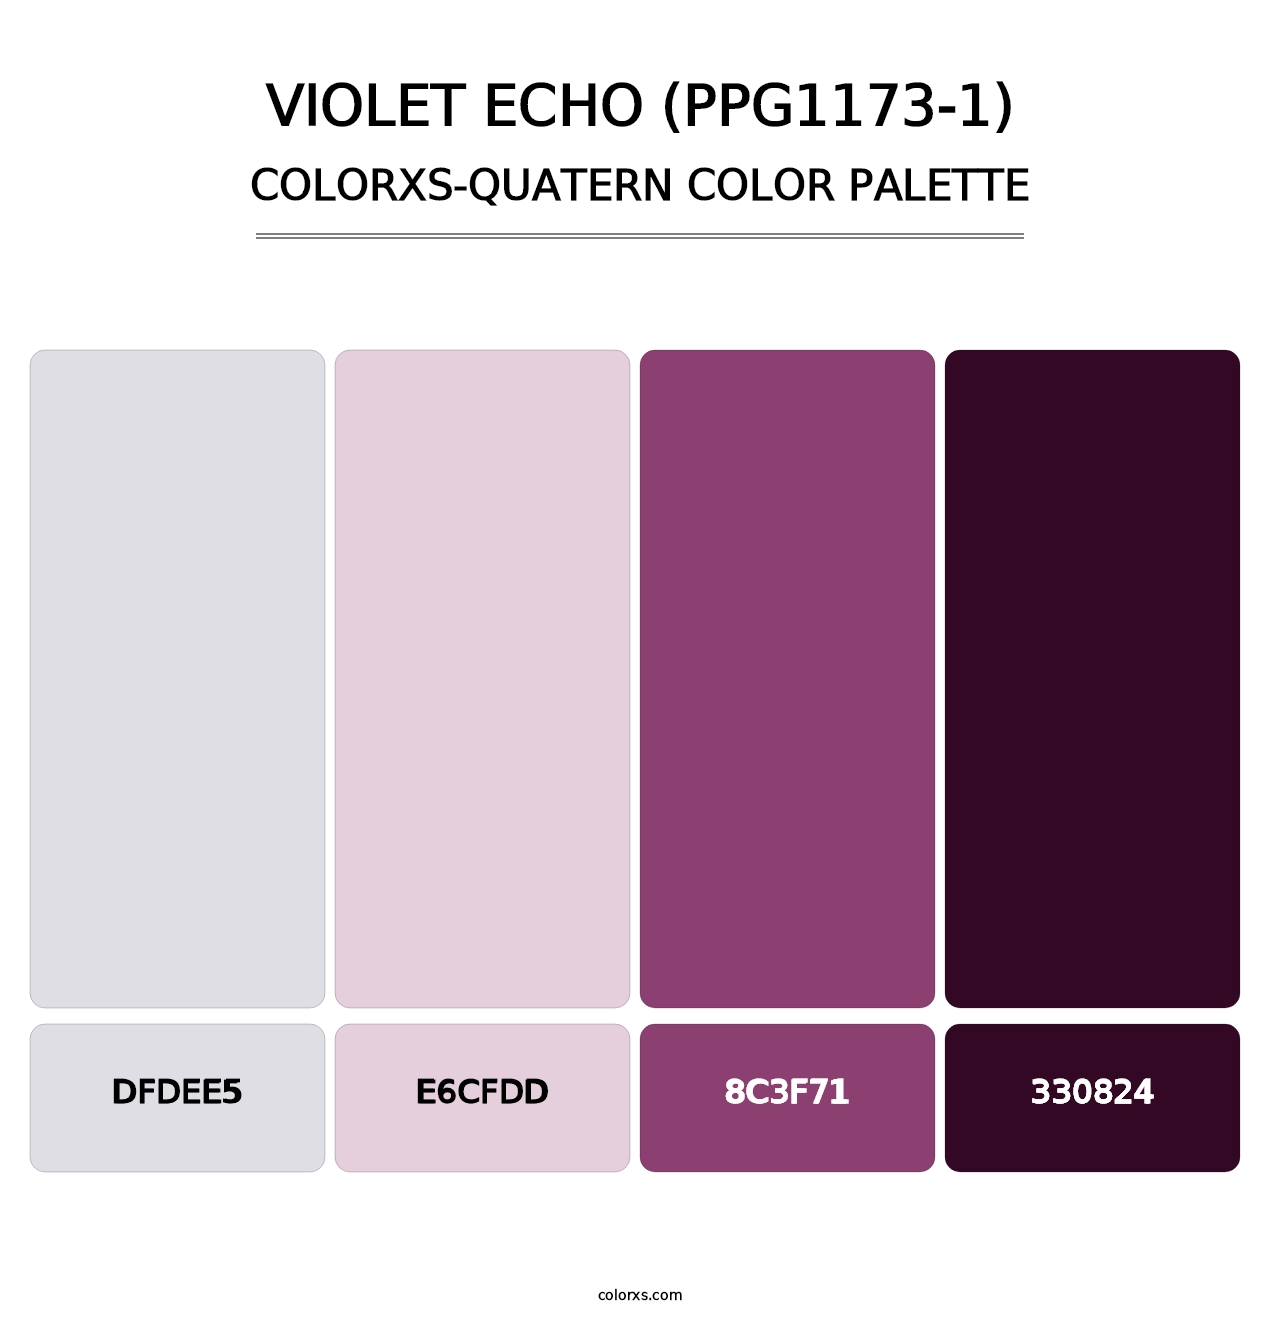 Violet Echo (PPG1173-1) - Colorxs Quatern Palette